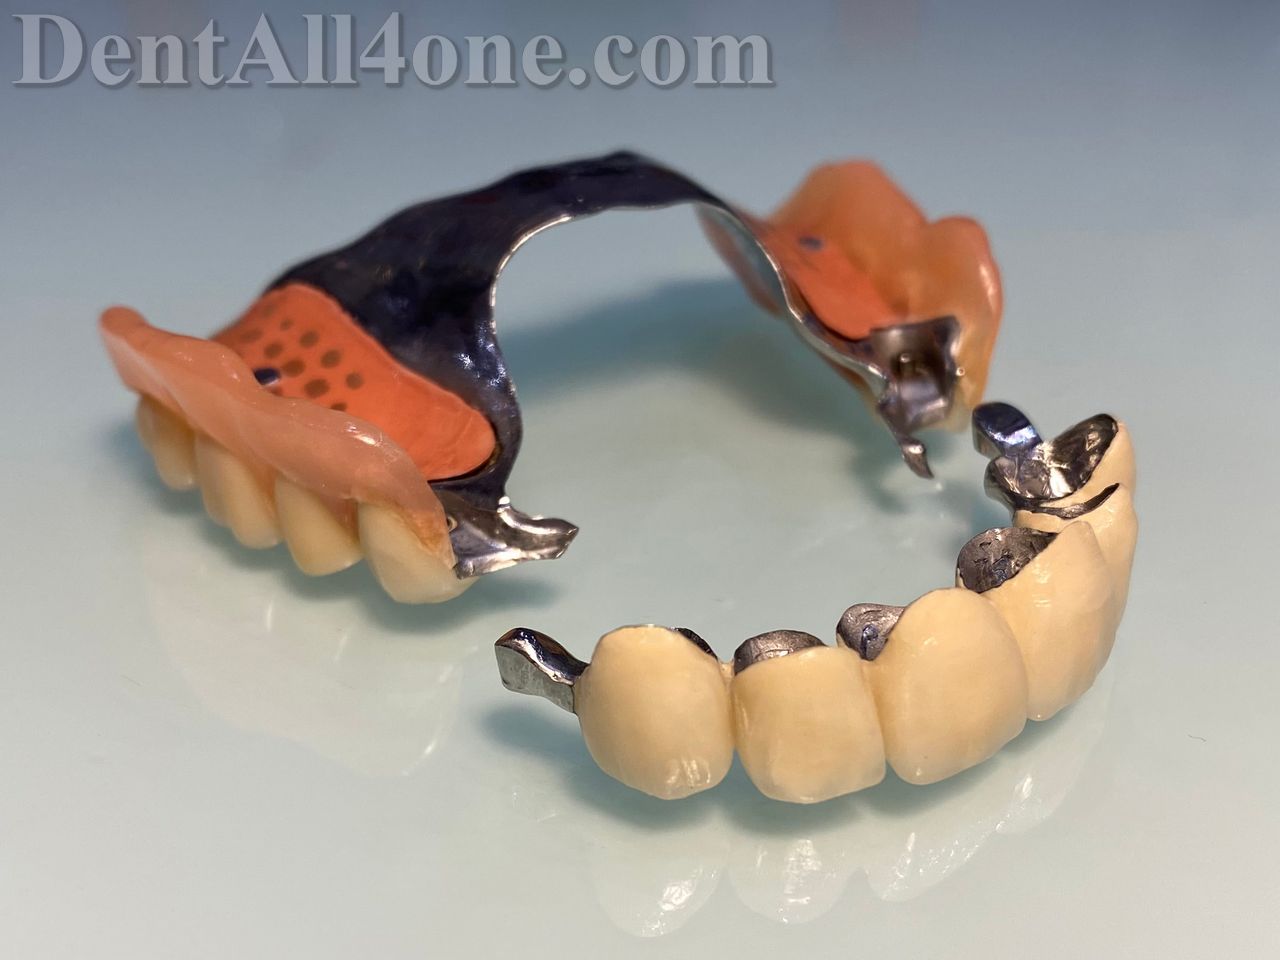 Geschiebeprothese mit Gaumenplatte - www.dentall4one.com